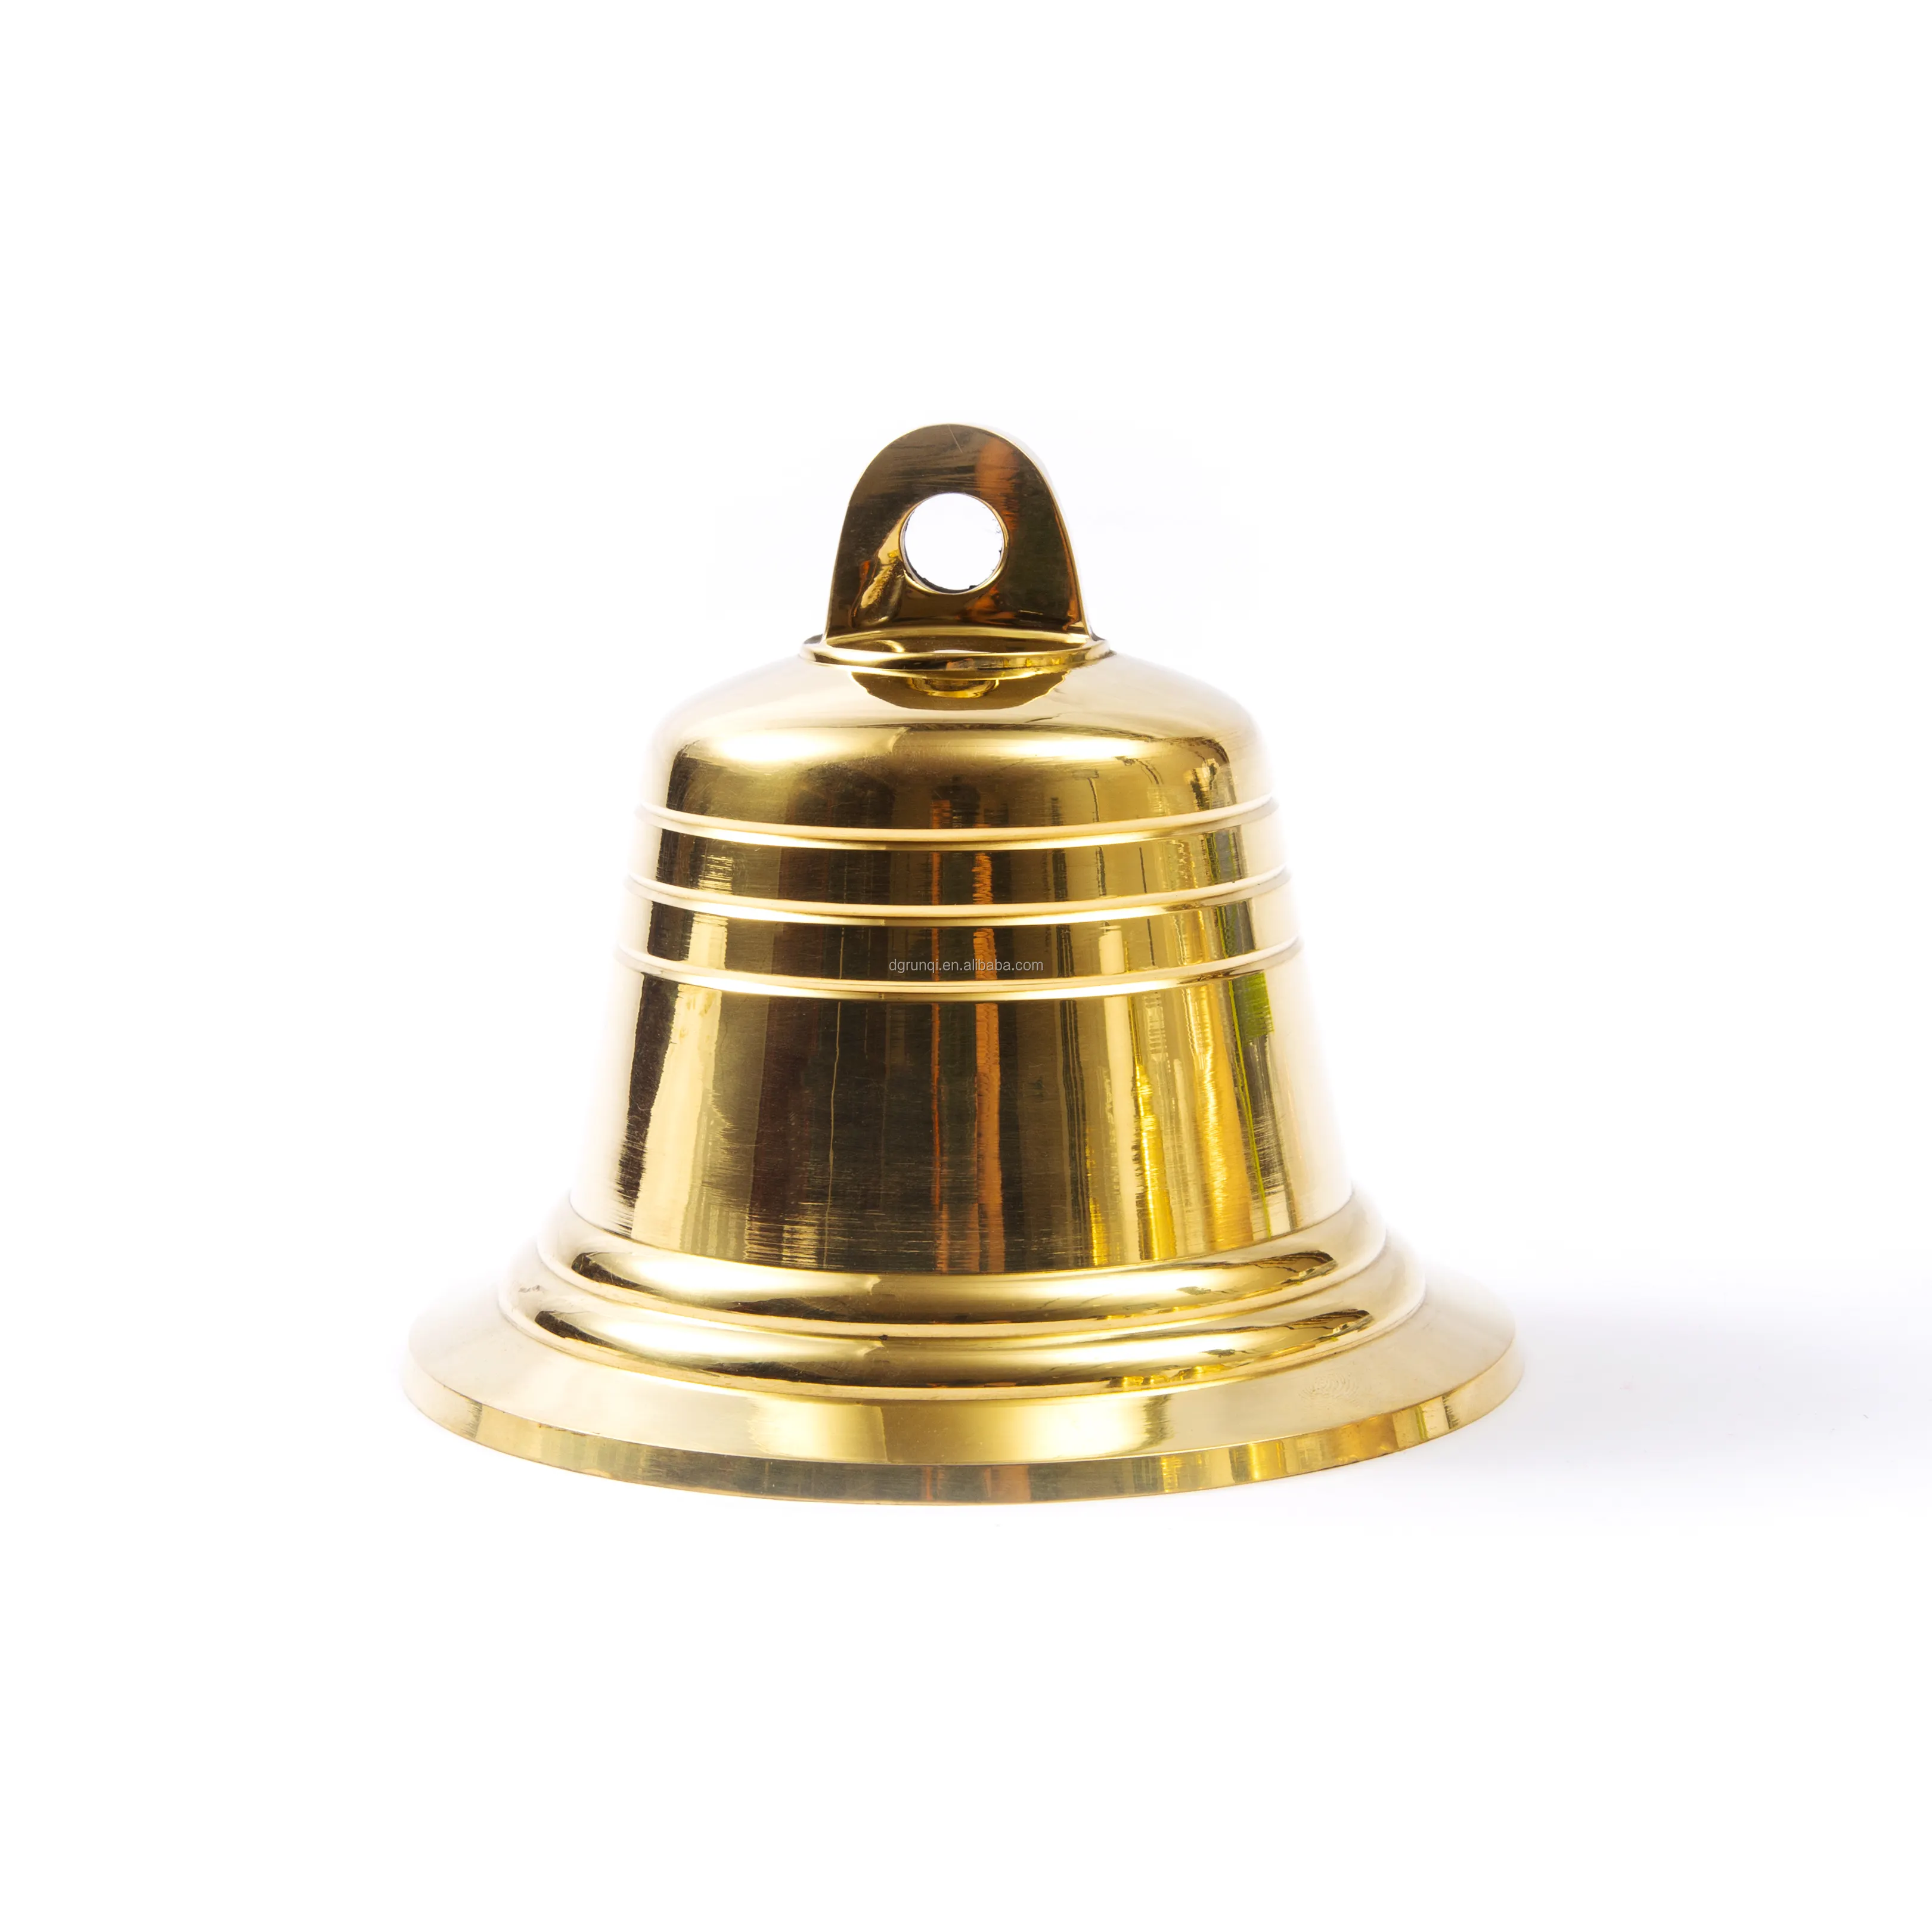 Brass Hàng Hải chuông cho trong nước nhà bếp hoặc nhà thờ và treo xử lý cho trong nhà và ngoài trời sử dụng cửa chuông